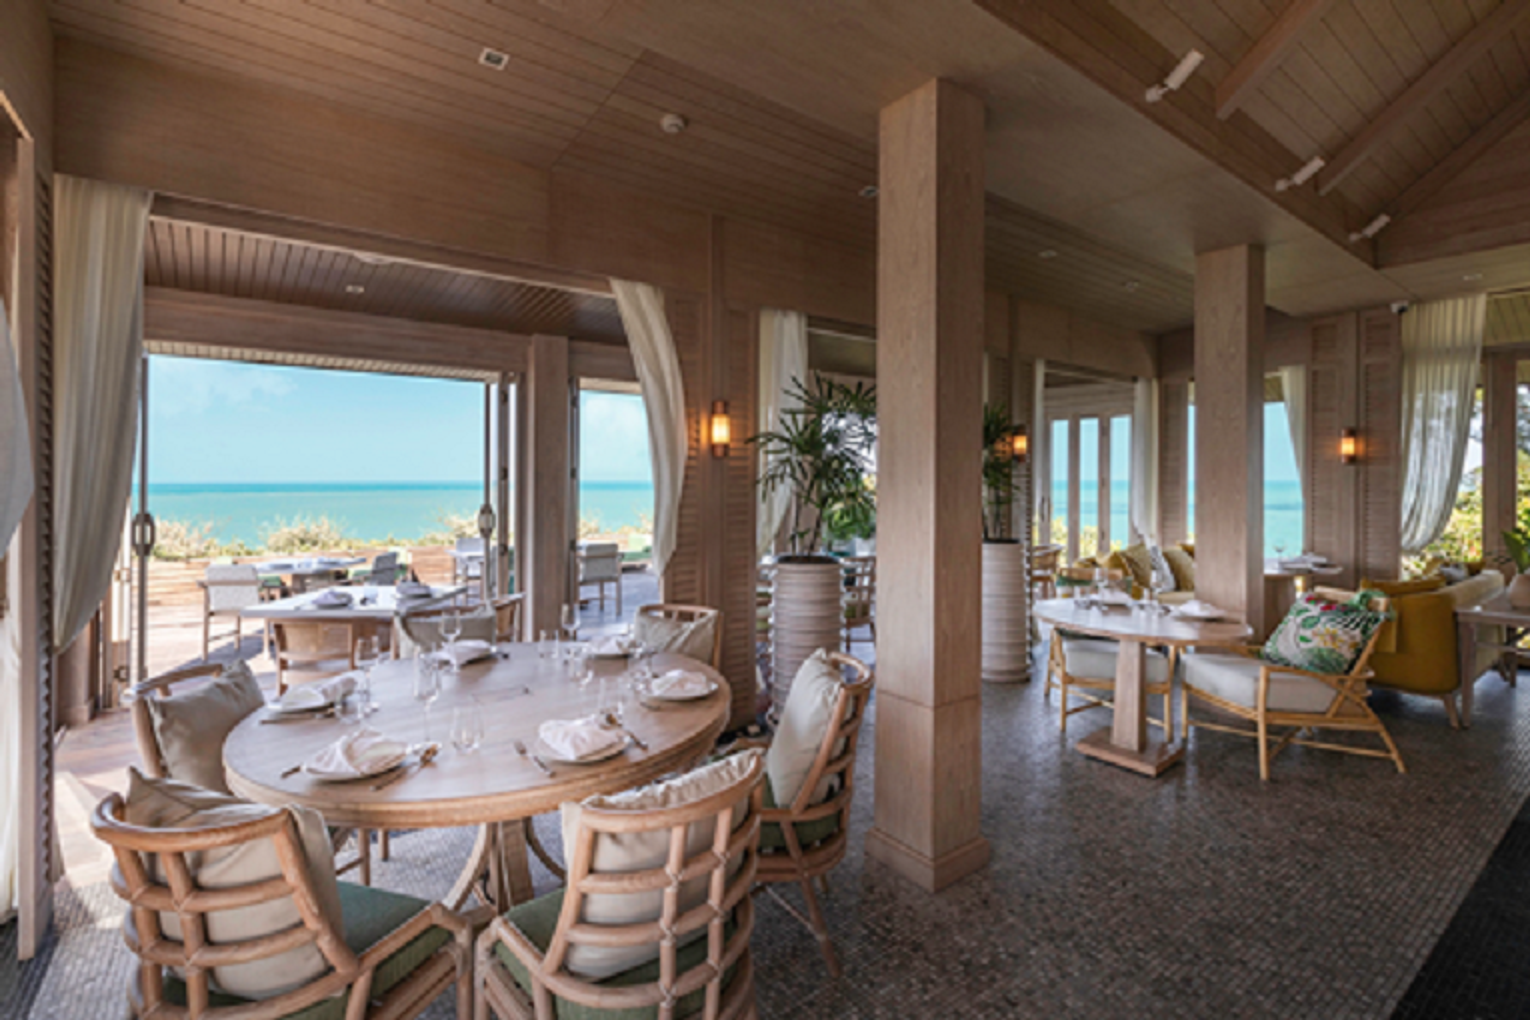 苏梅岛Cape Fahn度假村Long Dtai餐厅盛大开业